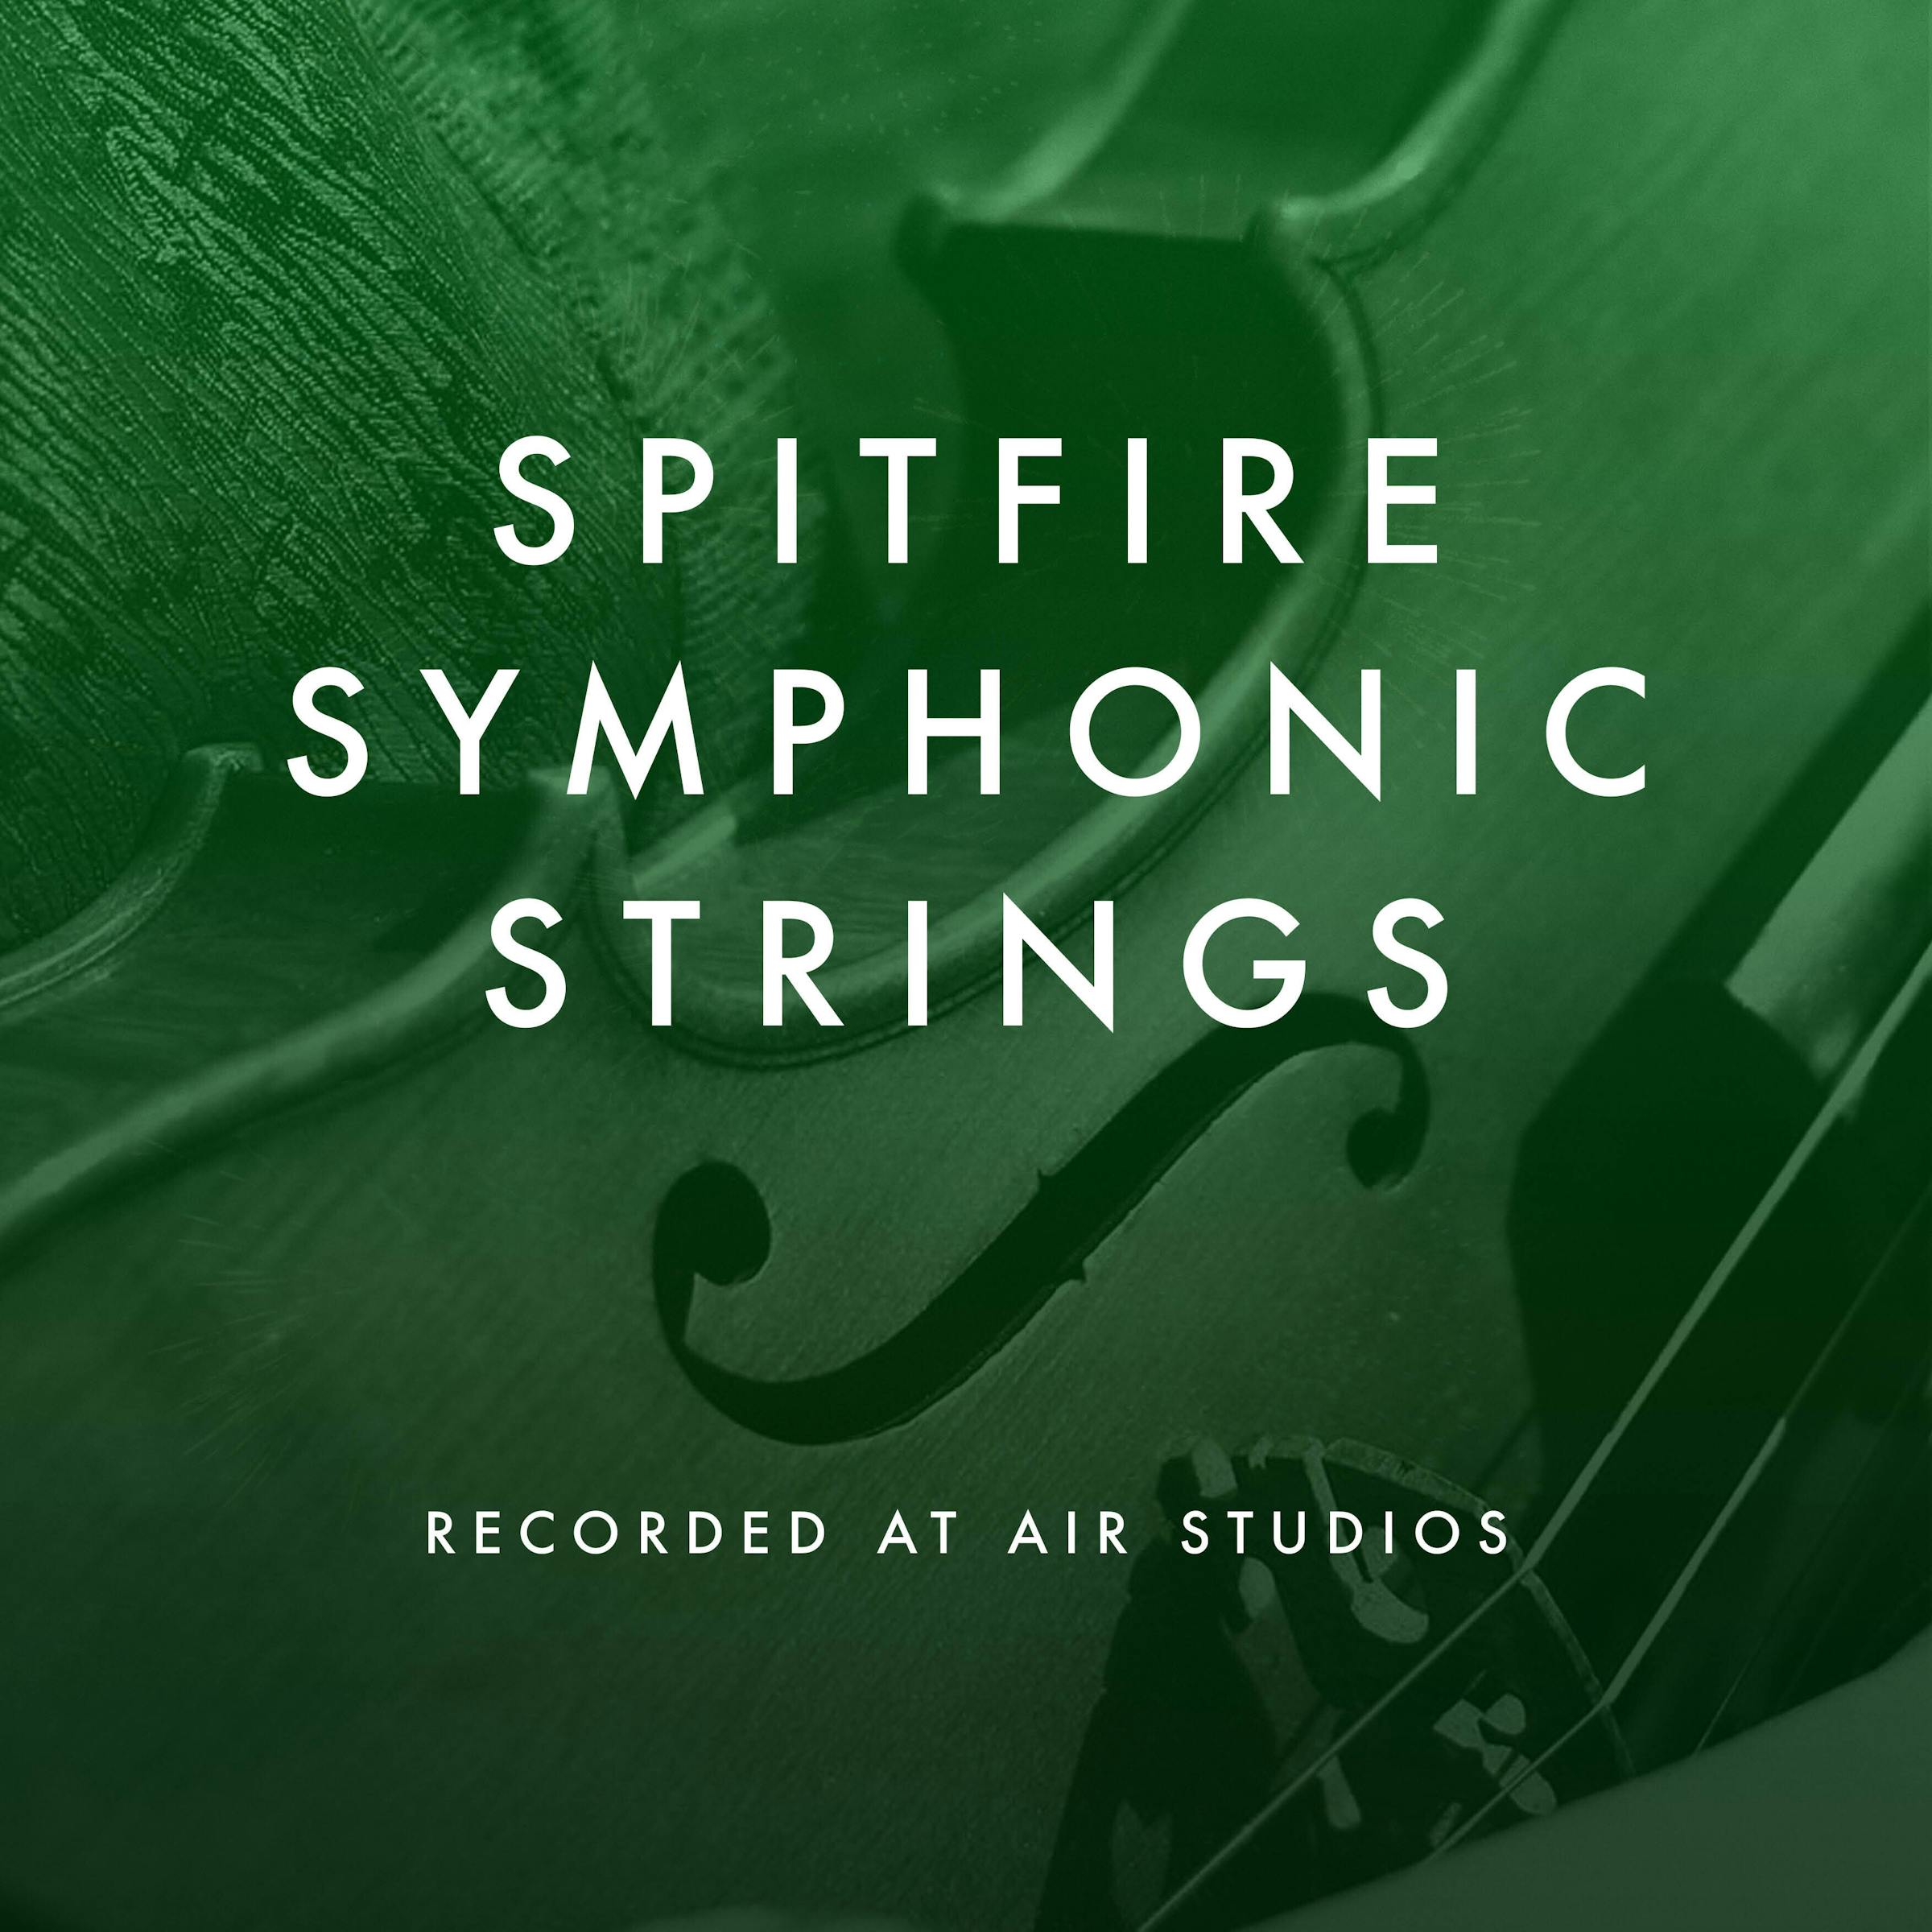 Spitfire Symphonic Strings